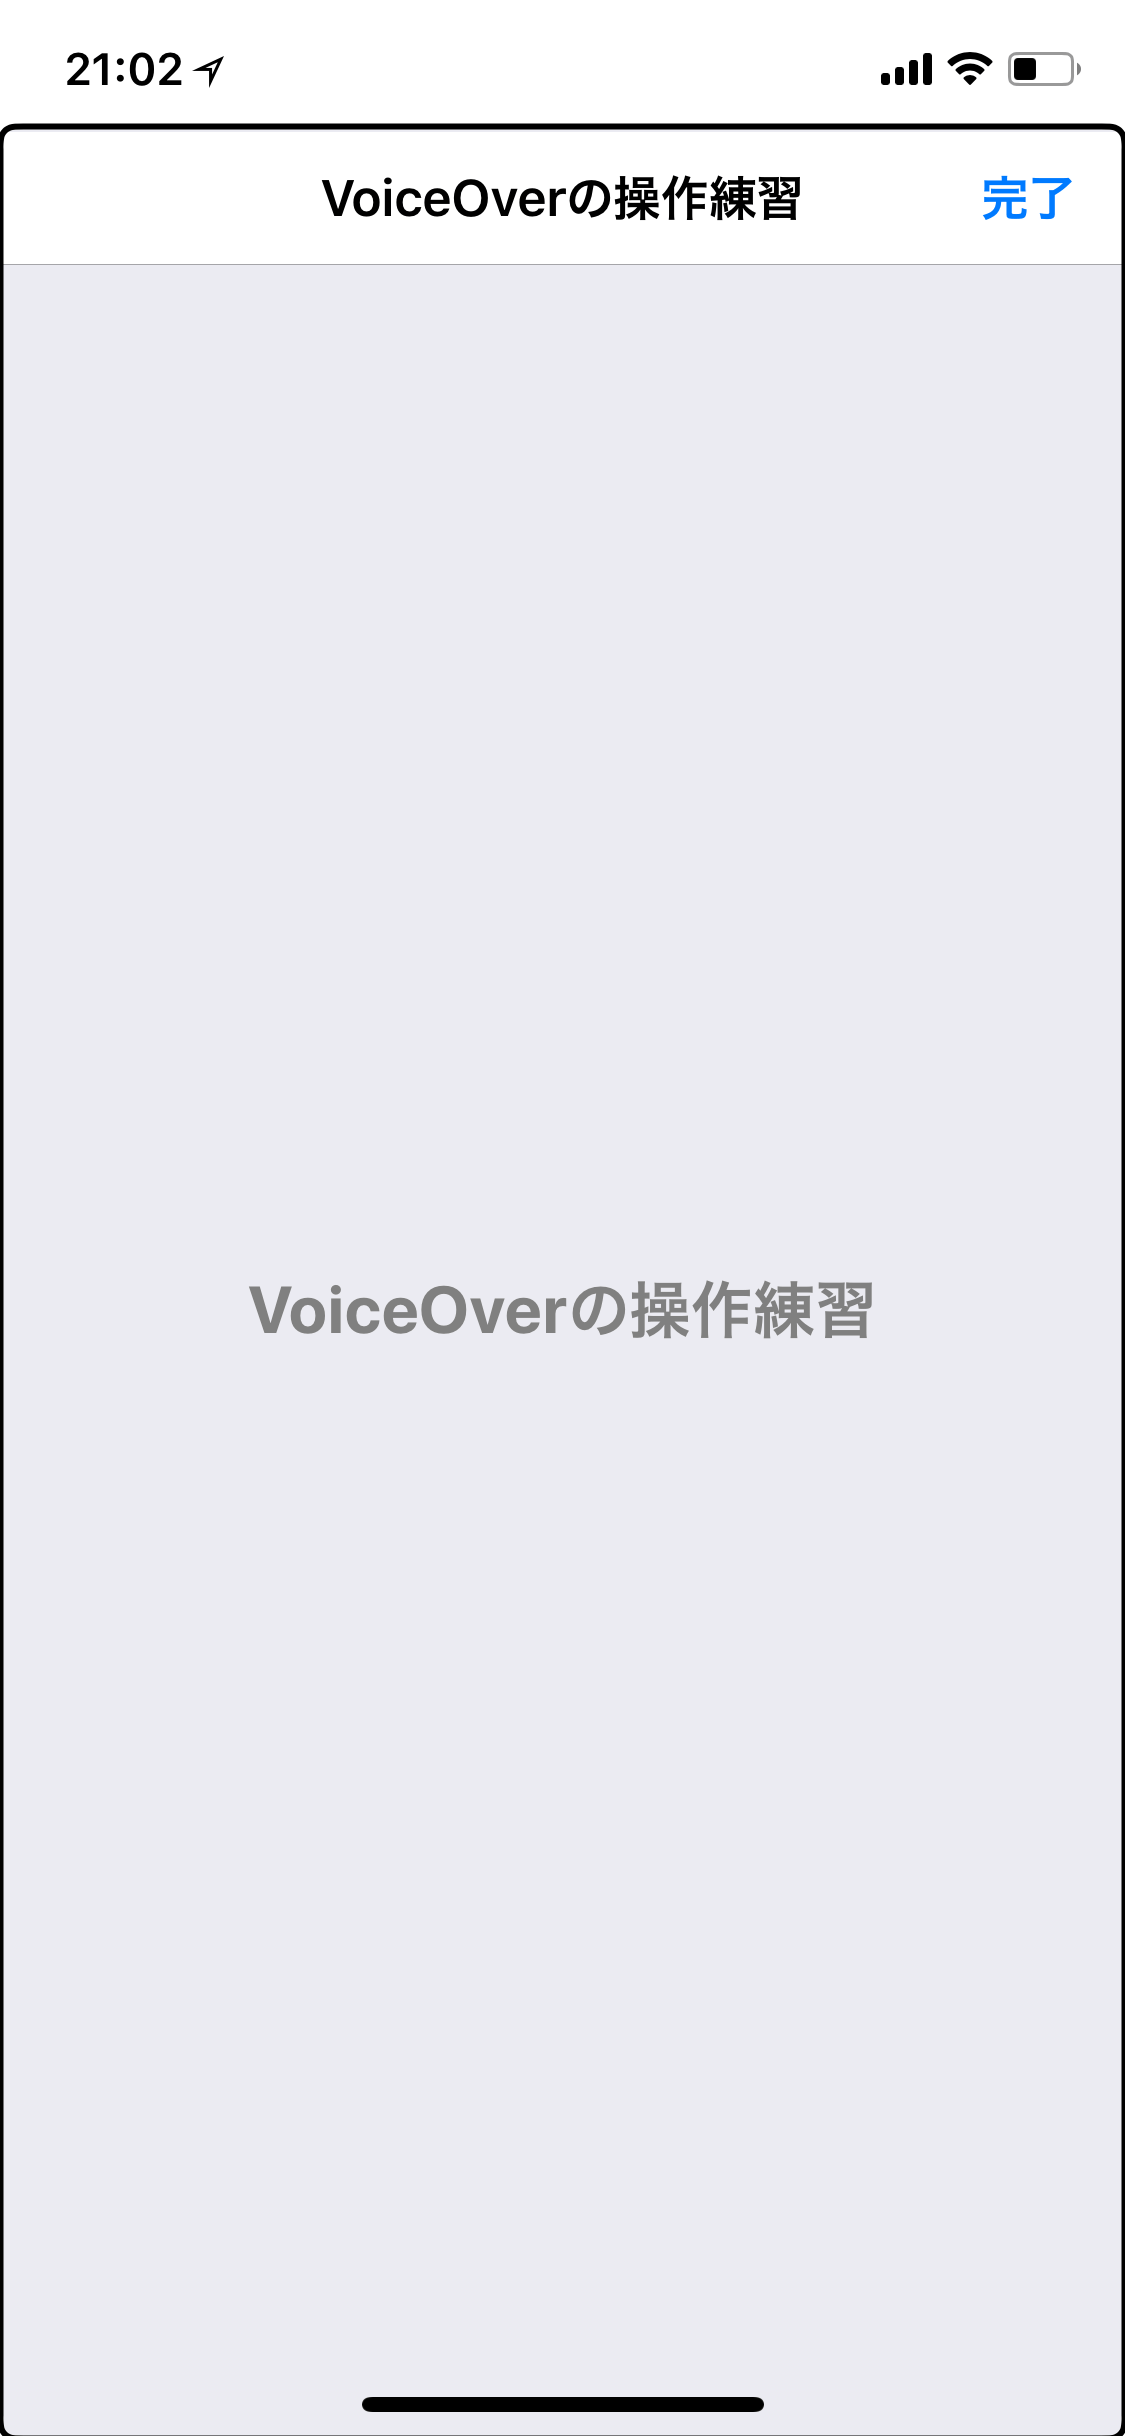 iOS VoiceOverの操作練習画面。ここでVoiceOverの操作を練習できる